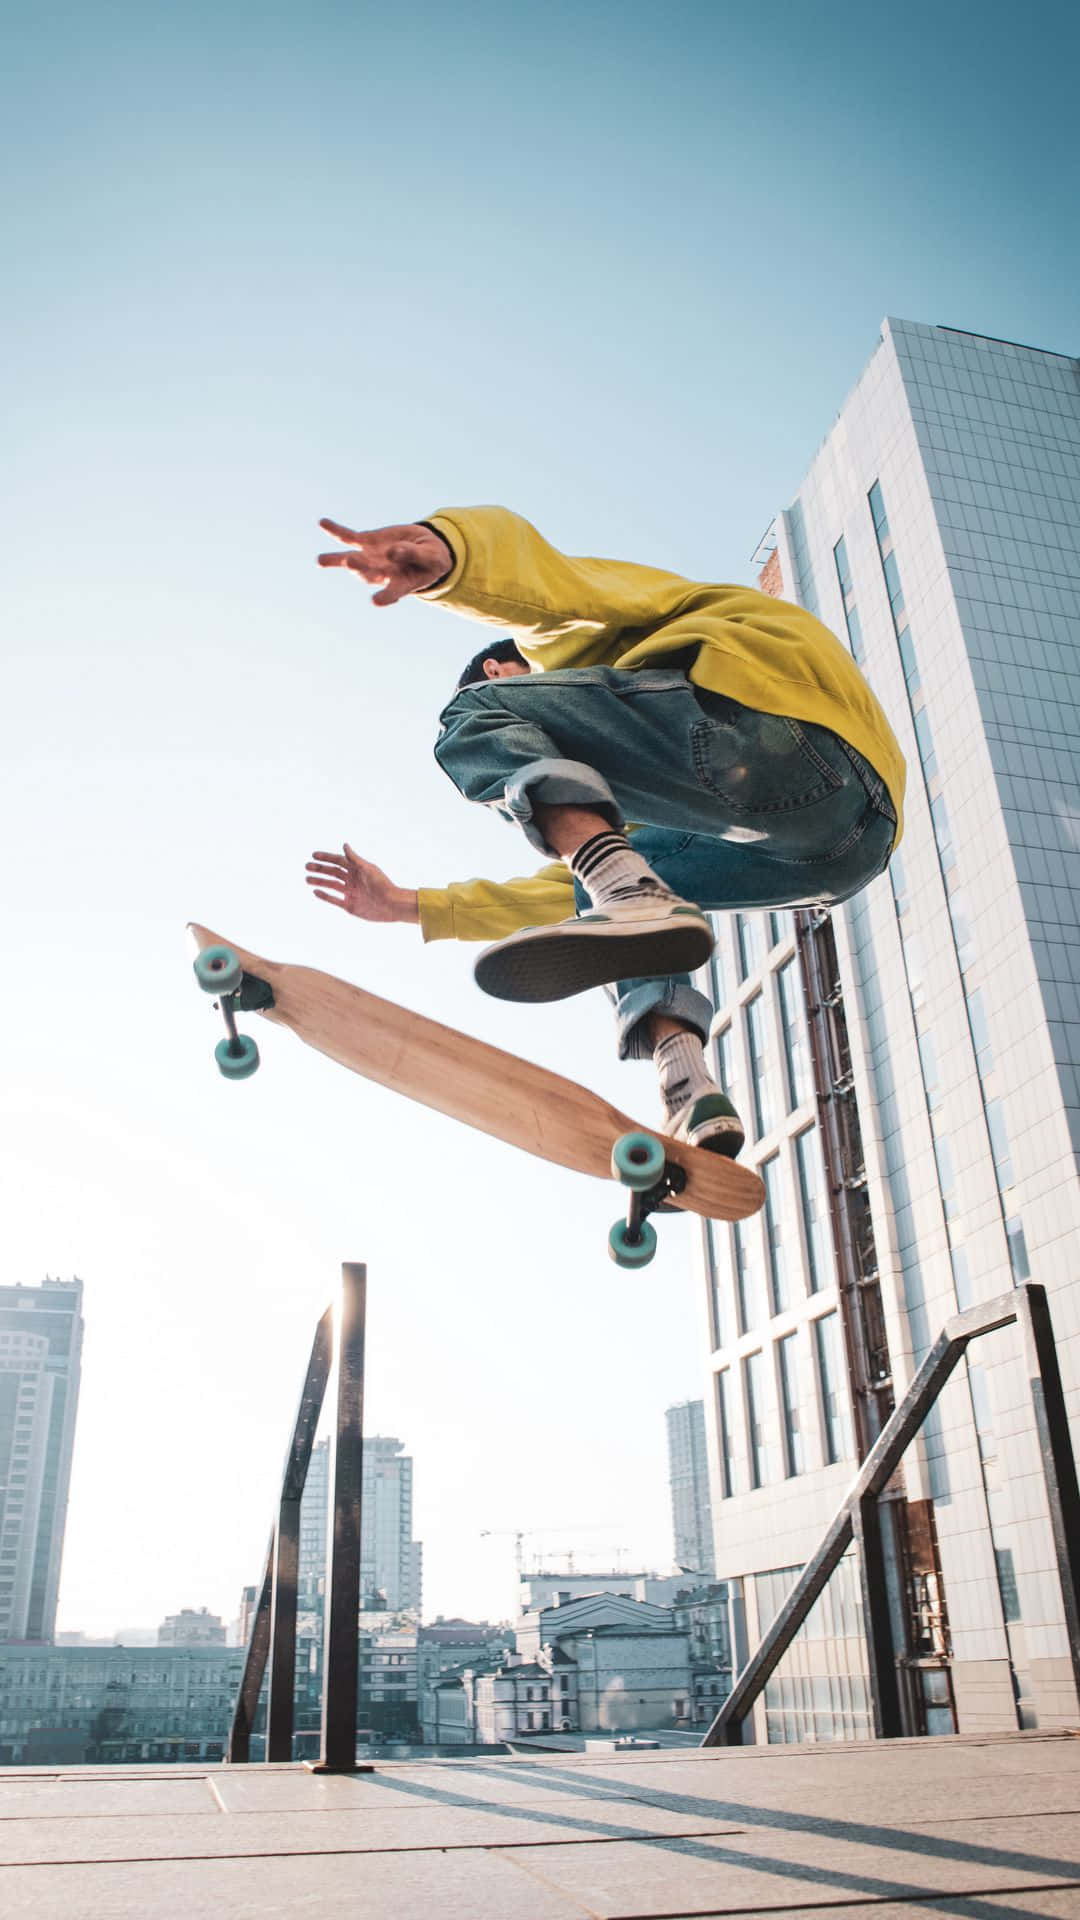 En skateboarder der udfører tricks i luften Wallpaper